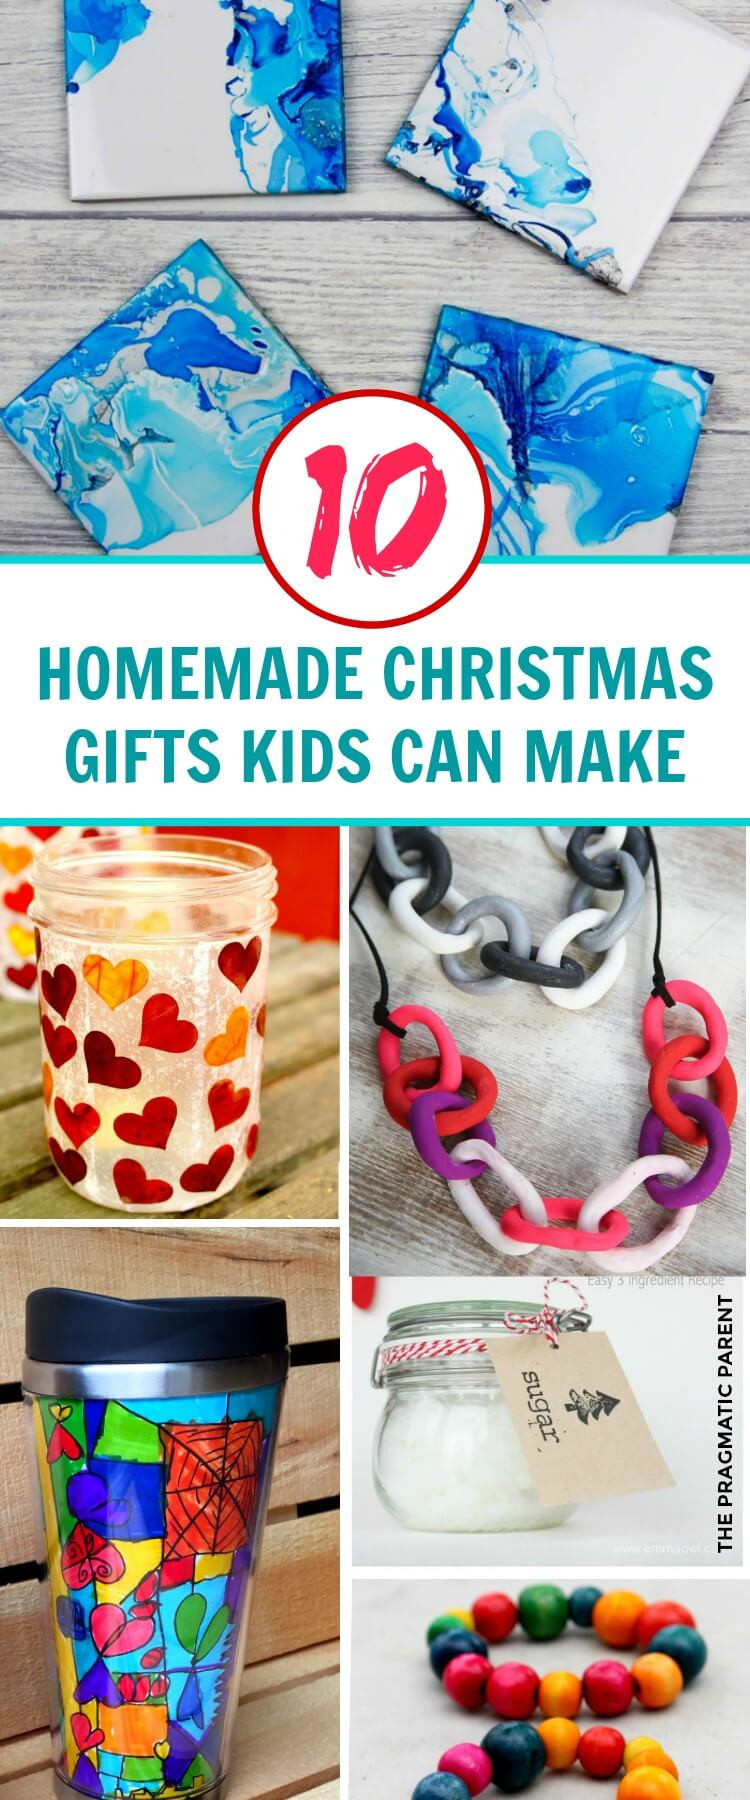 DIY Kids Christmas Gifts
 10 Beautiful Homemade Christmas Gifts Kids Can Make This 2020